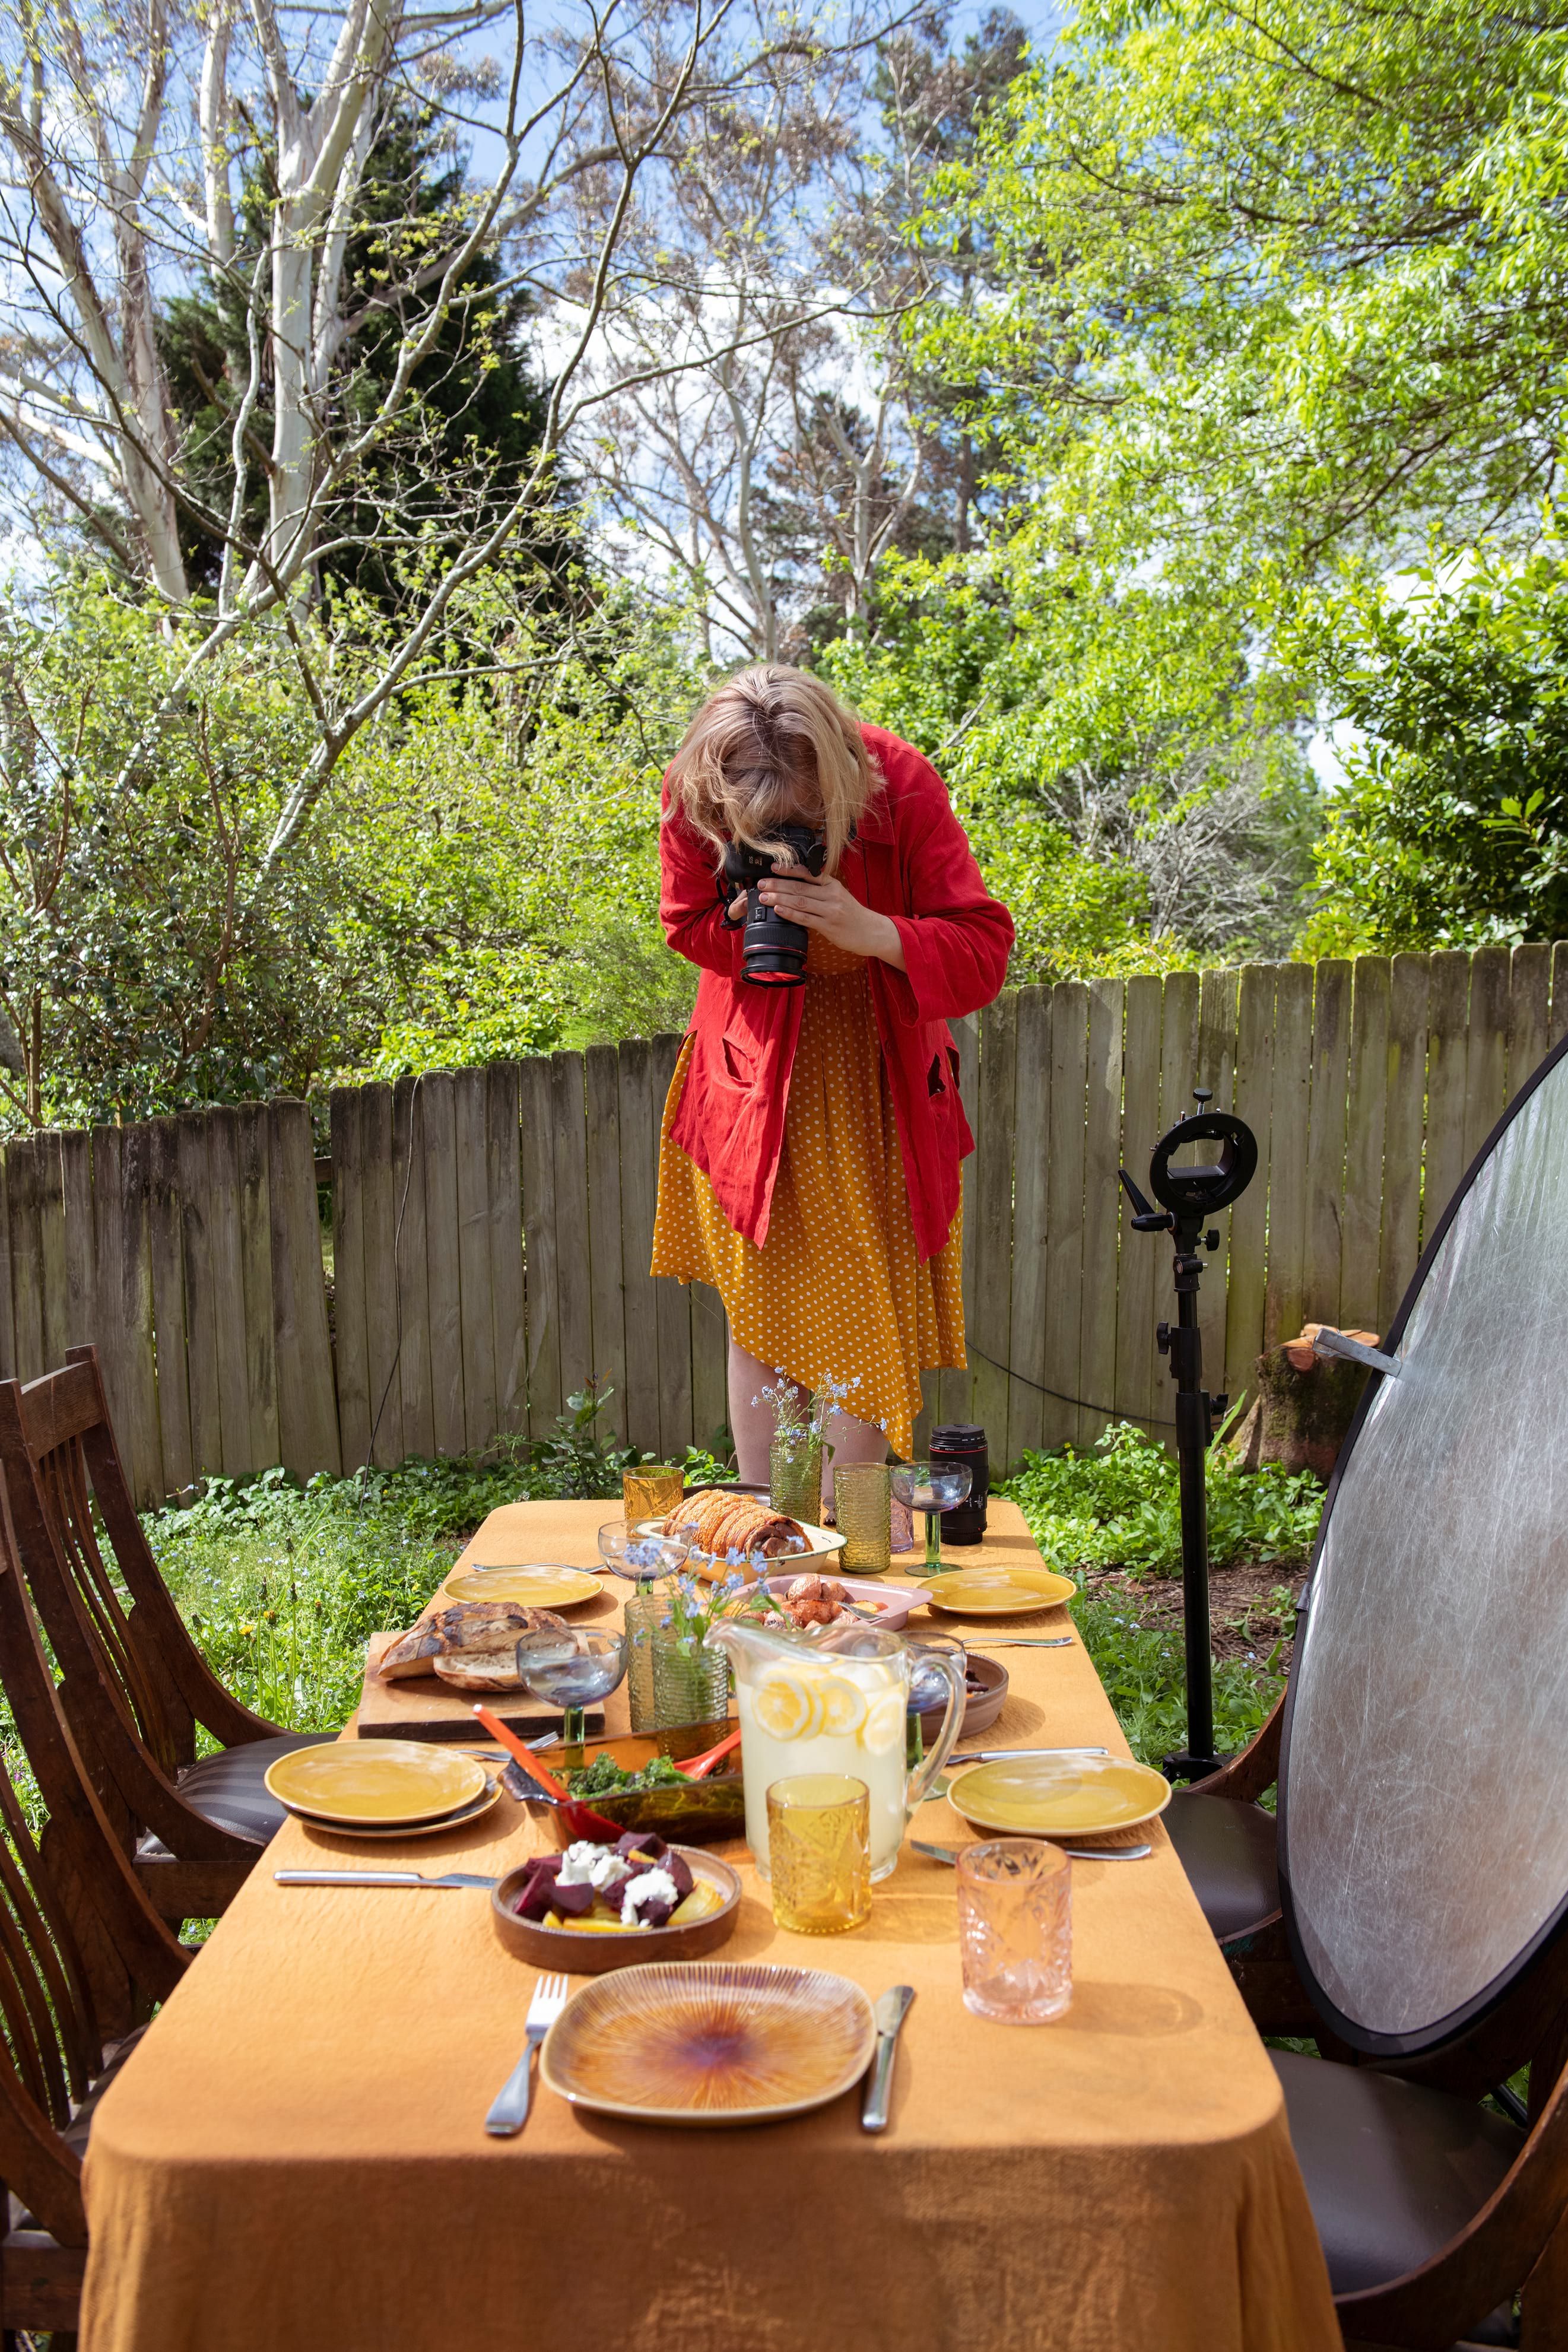 Kobieta robi zdjęcie stołu, na którym leży jedzenie.